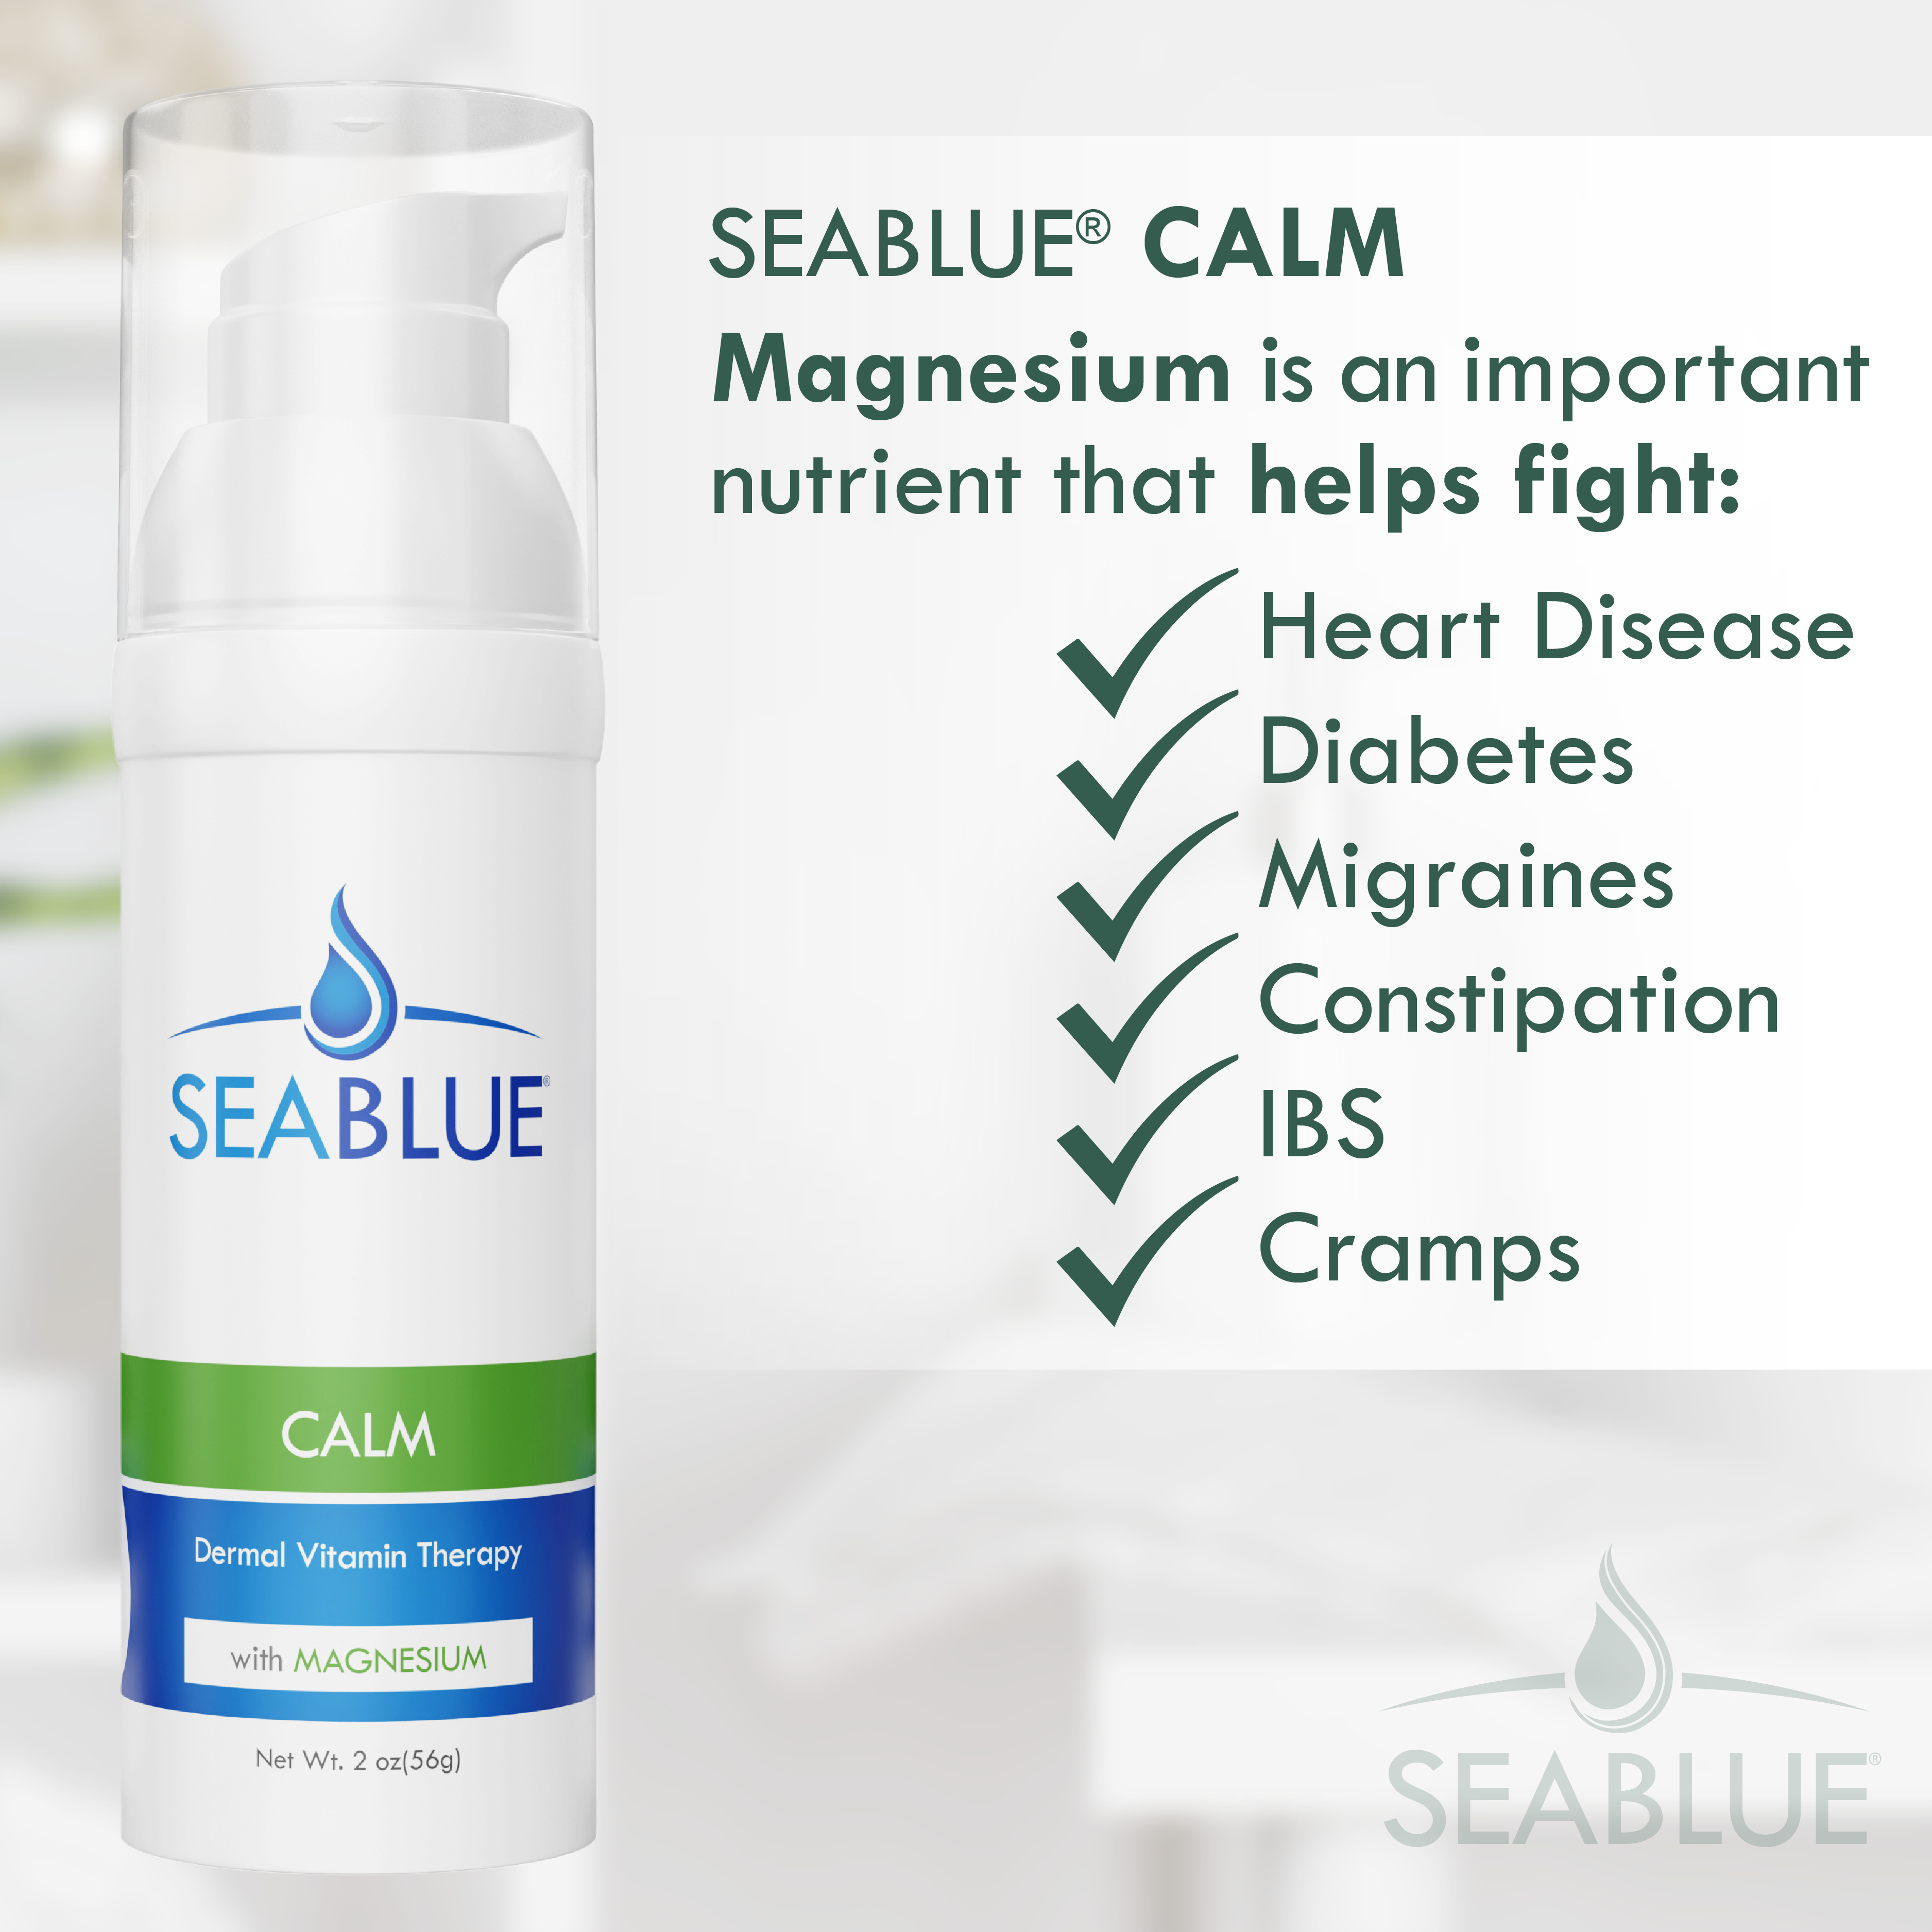 SEABLUE® Calm Dermal Vitamin Cream with Magnesium